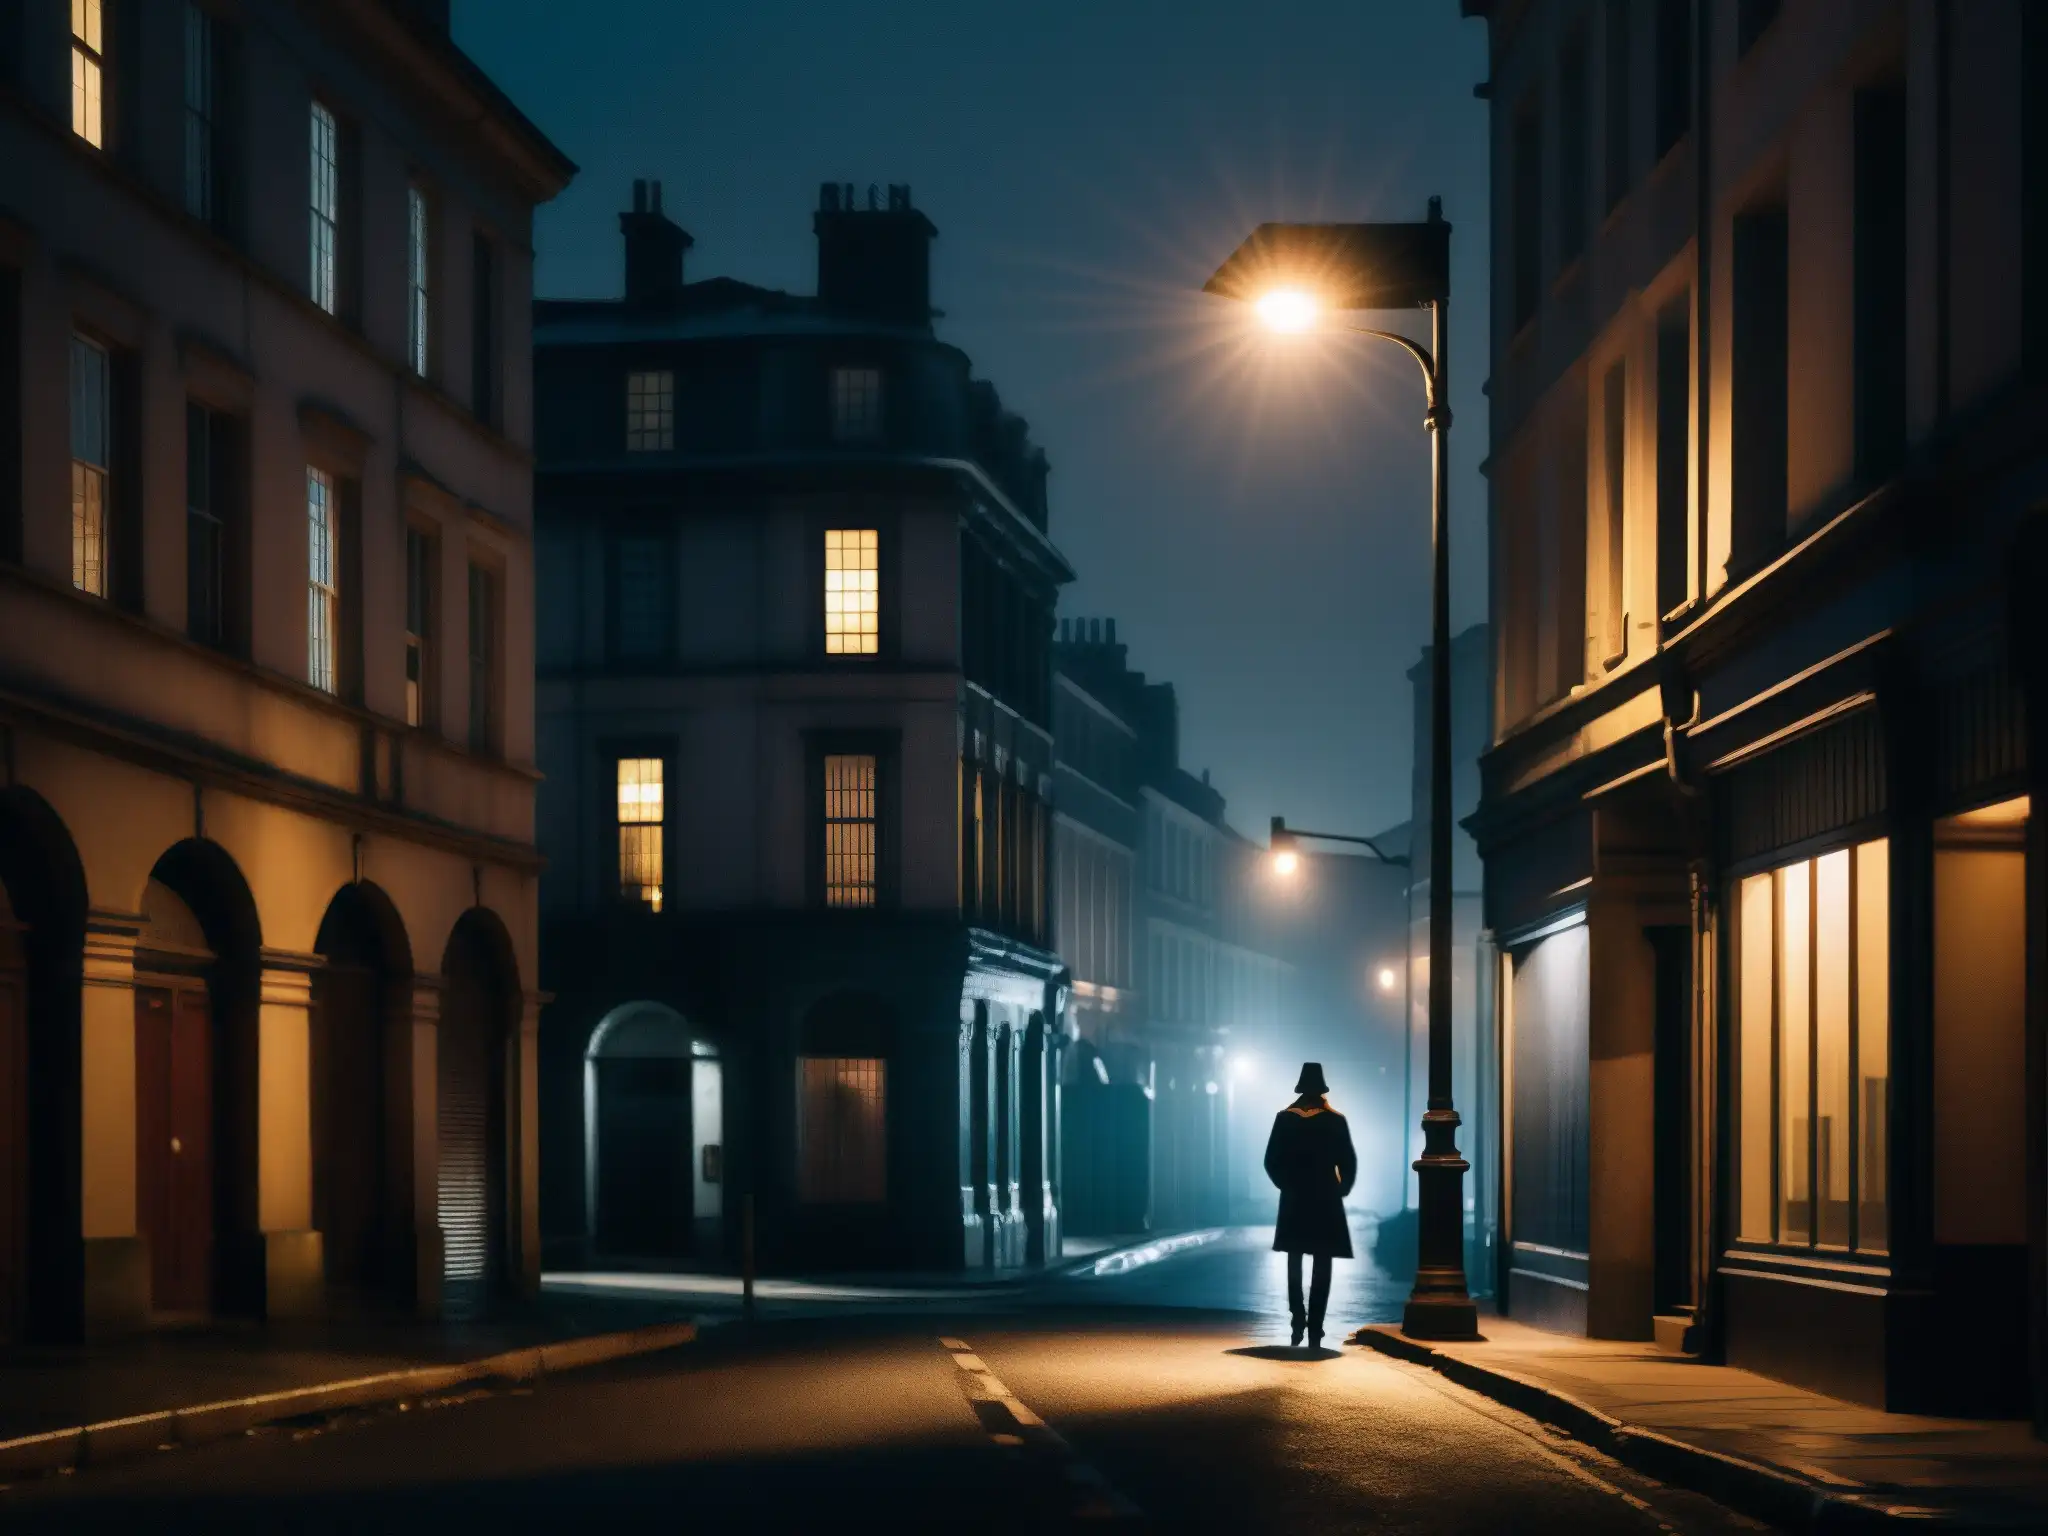 Un misterioso personaje bajo la luz de una farola en una oscura calle urbana, evocando el impacto de las leyendas urbanas en la salud mental